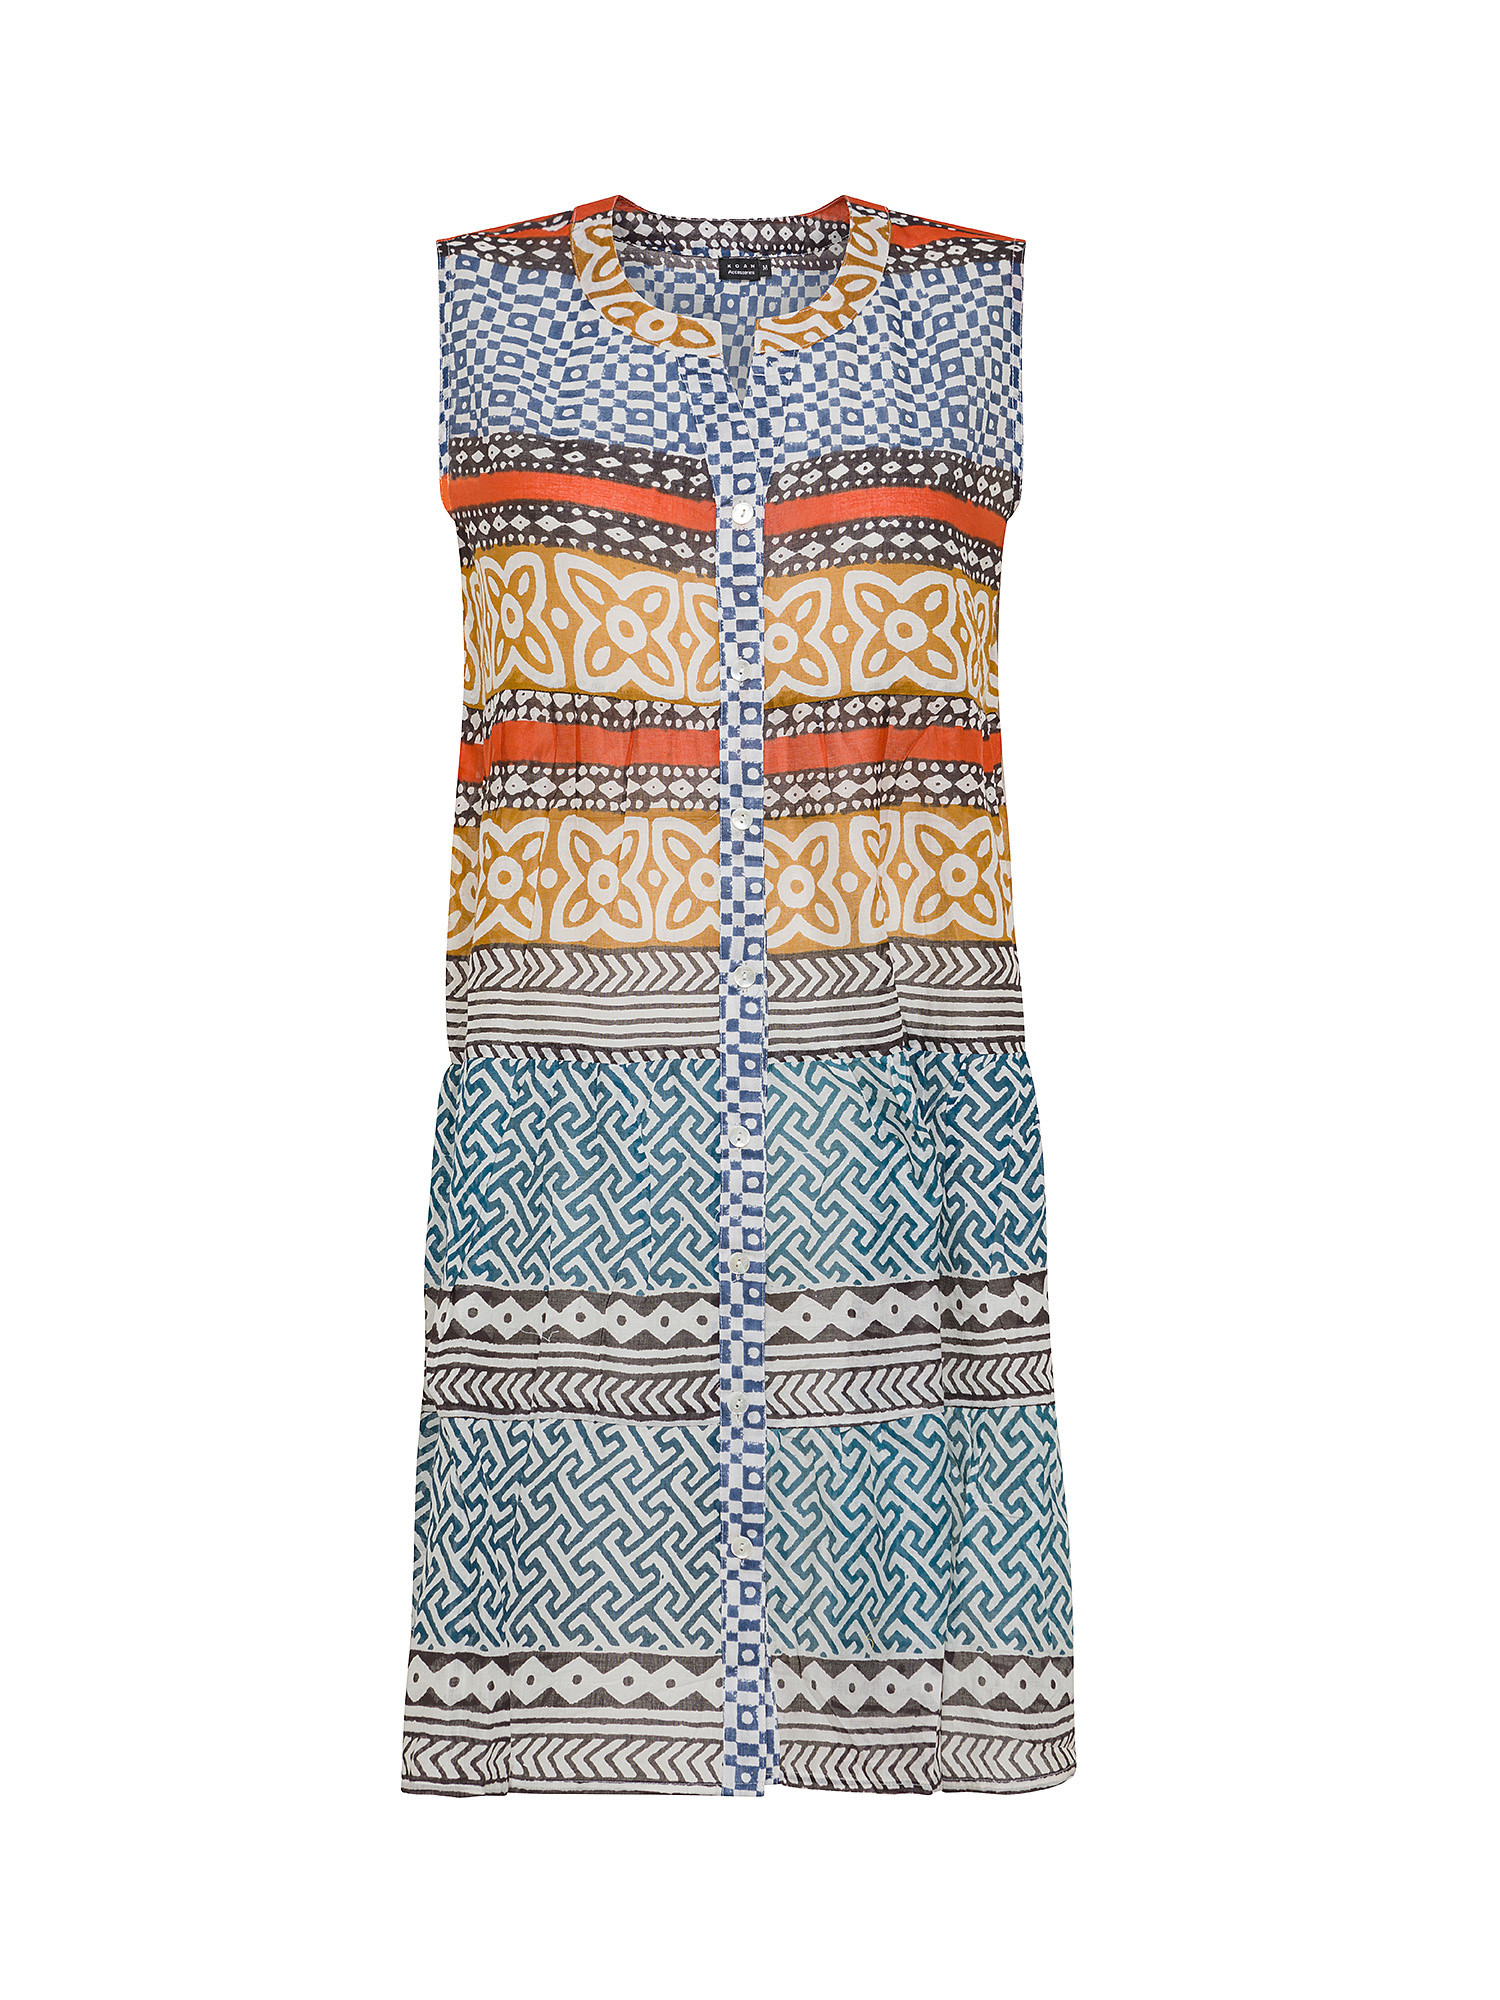 Koan - Patterned cotton dress, Blue, large image number 0